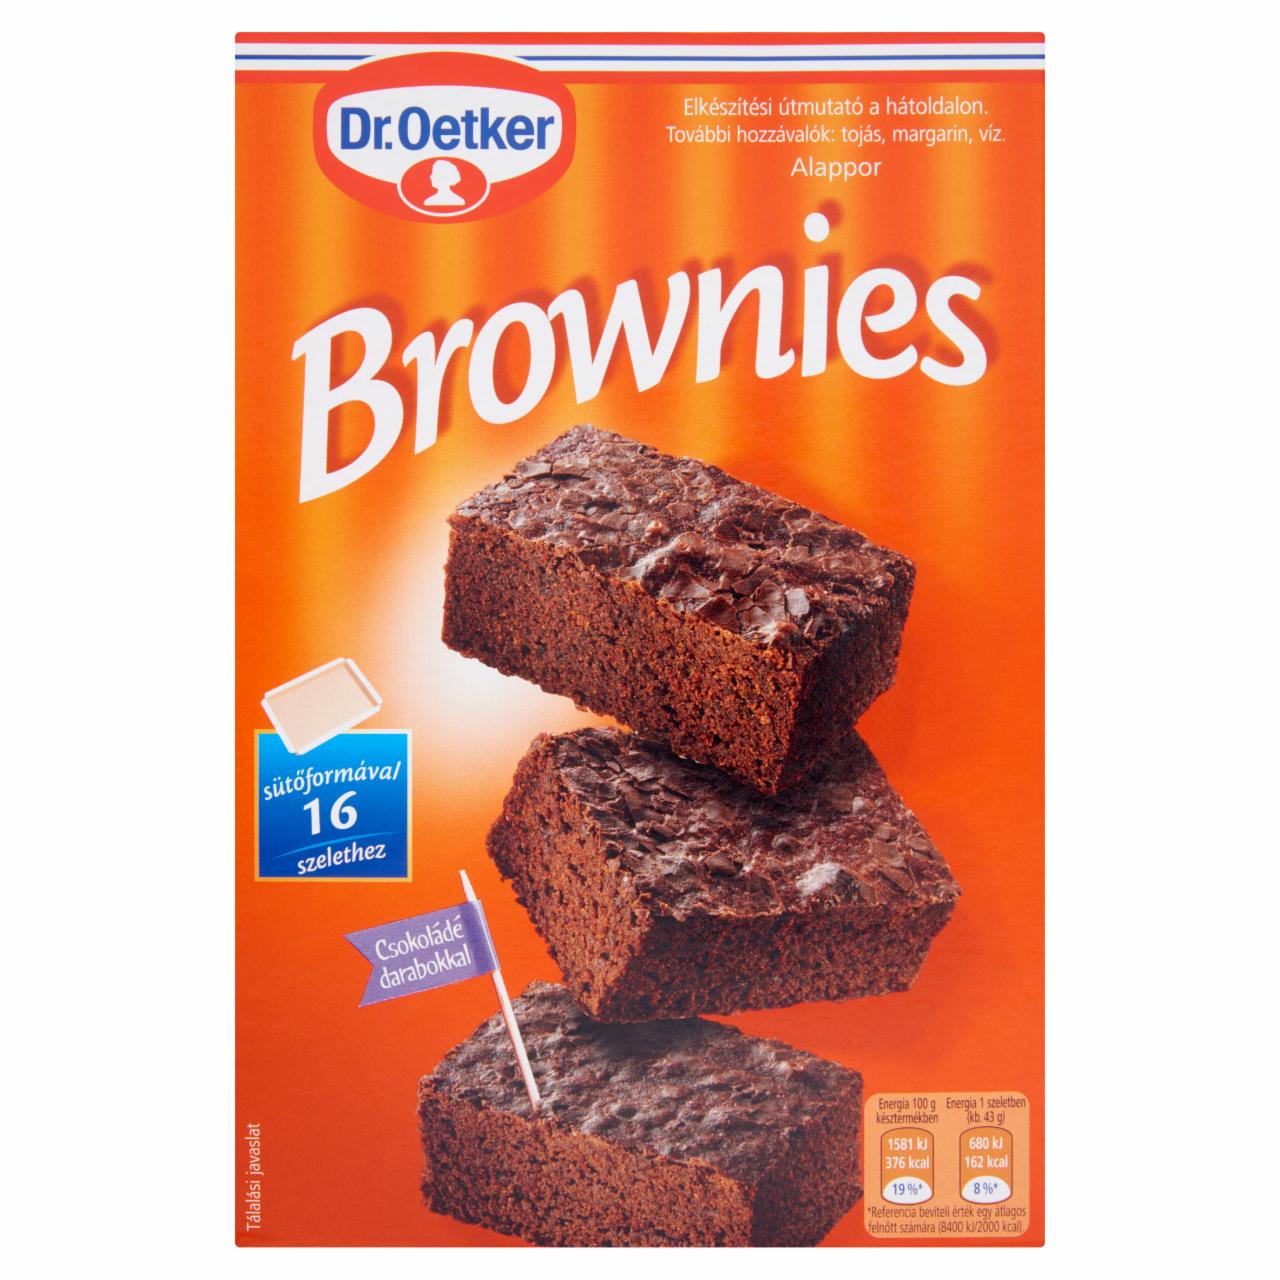 Képek - Brownies alappor Dr.Oetker